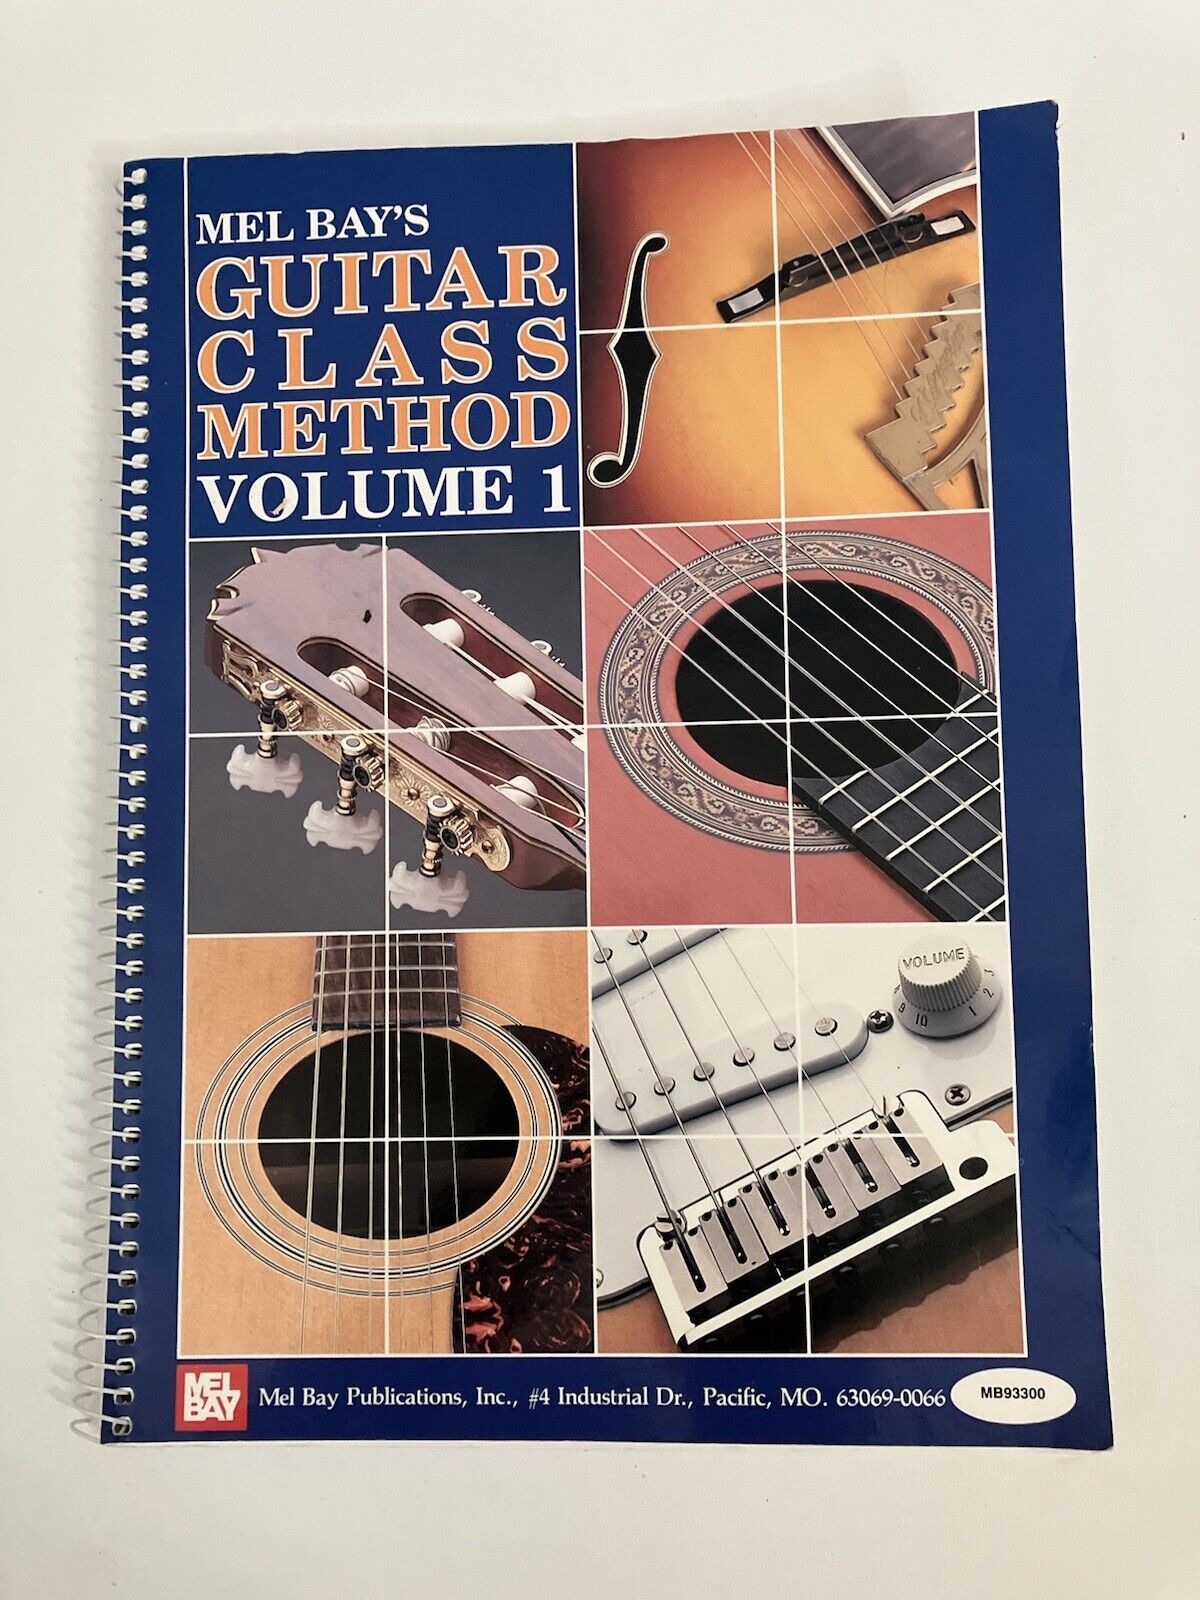 Book - Mel Bays “Guitar Class Method Volume 1” - 1976